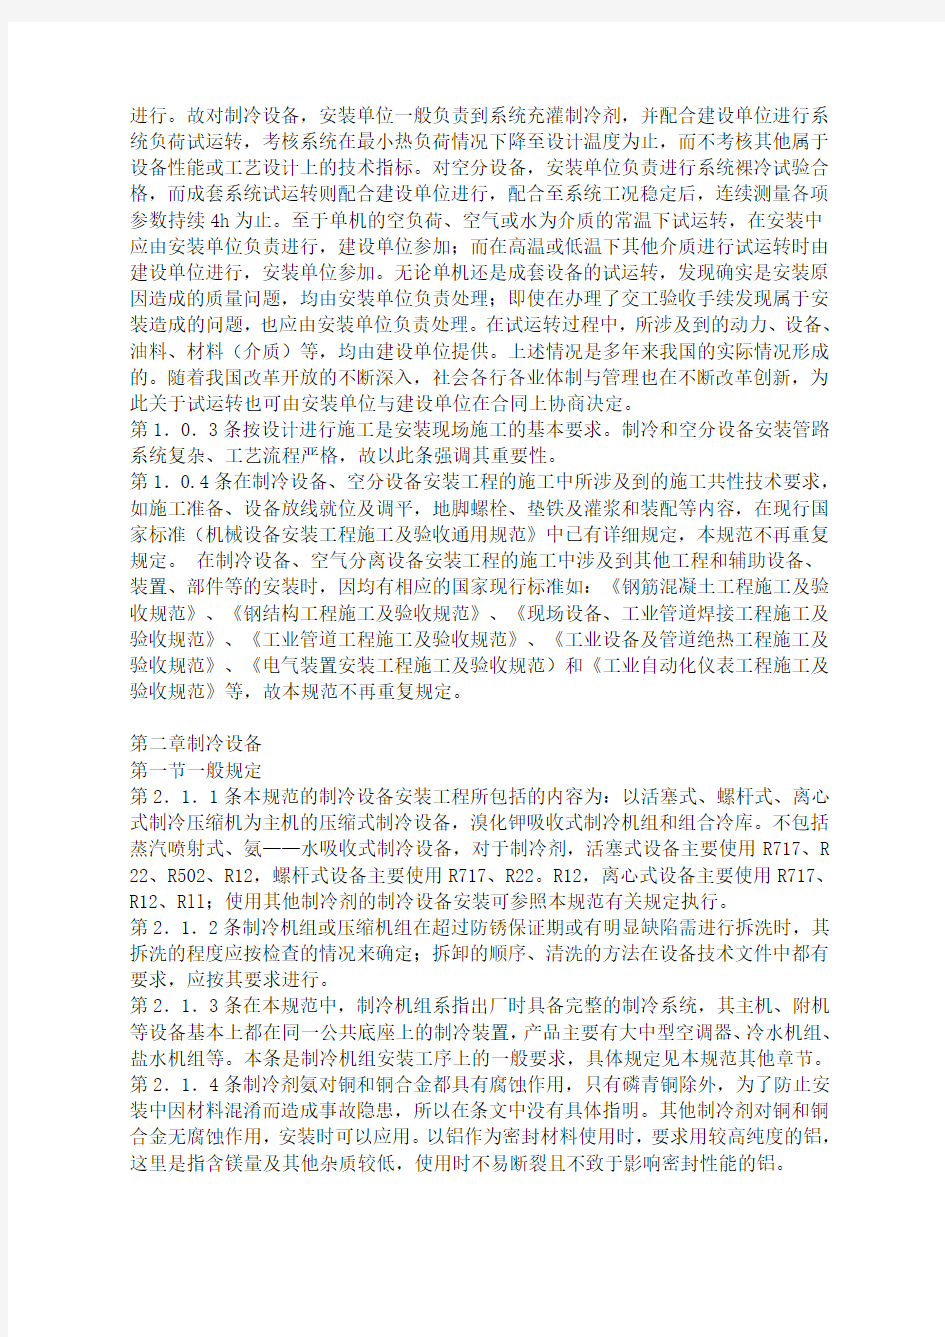 中华人民共和国国家标准制冷设备、空气分离设备安装工程施工及验收规范